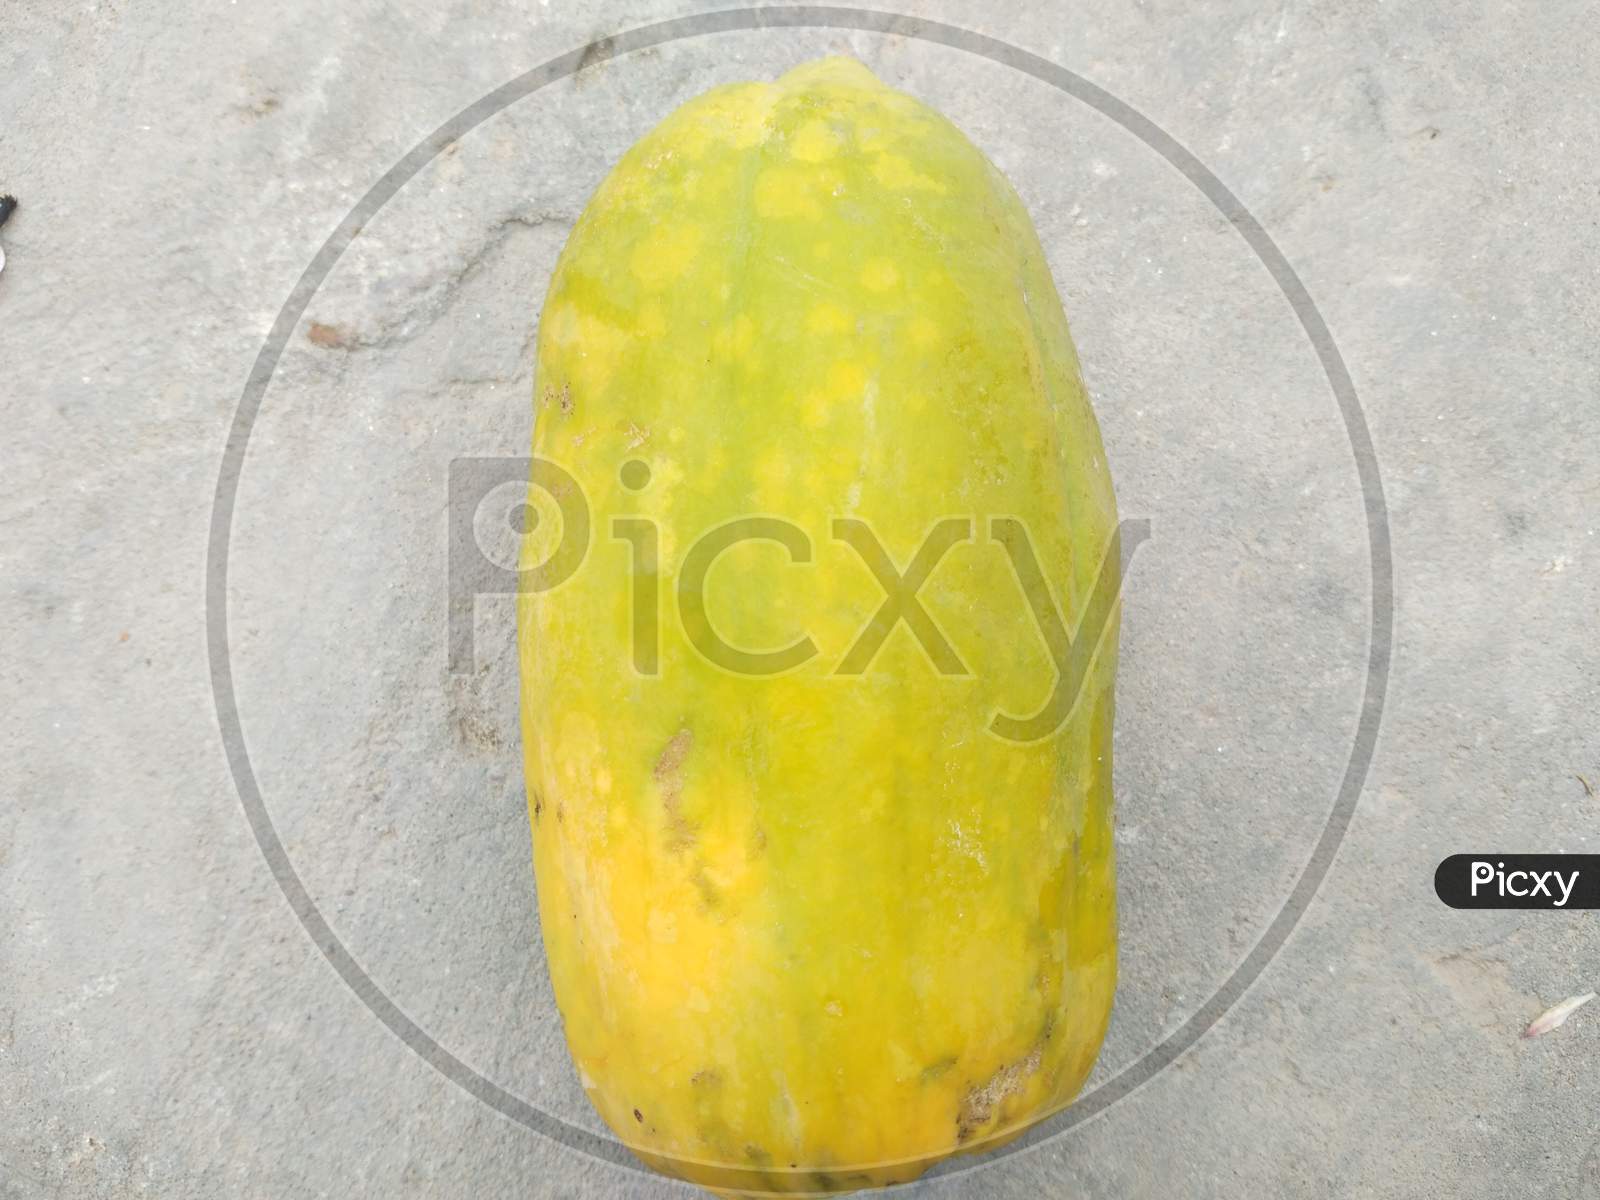 A papaya fruit in spring season